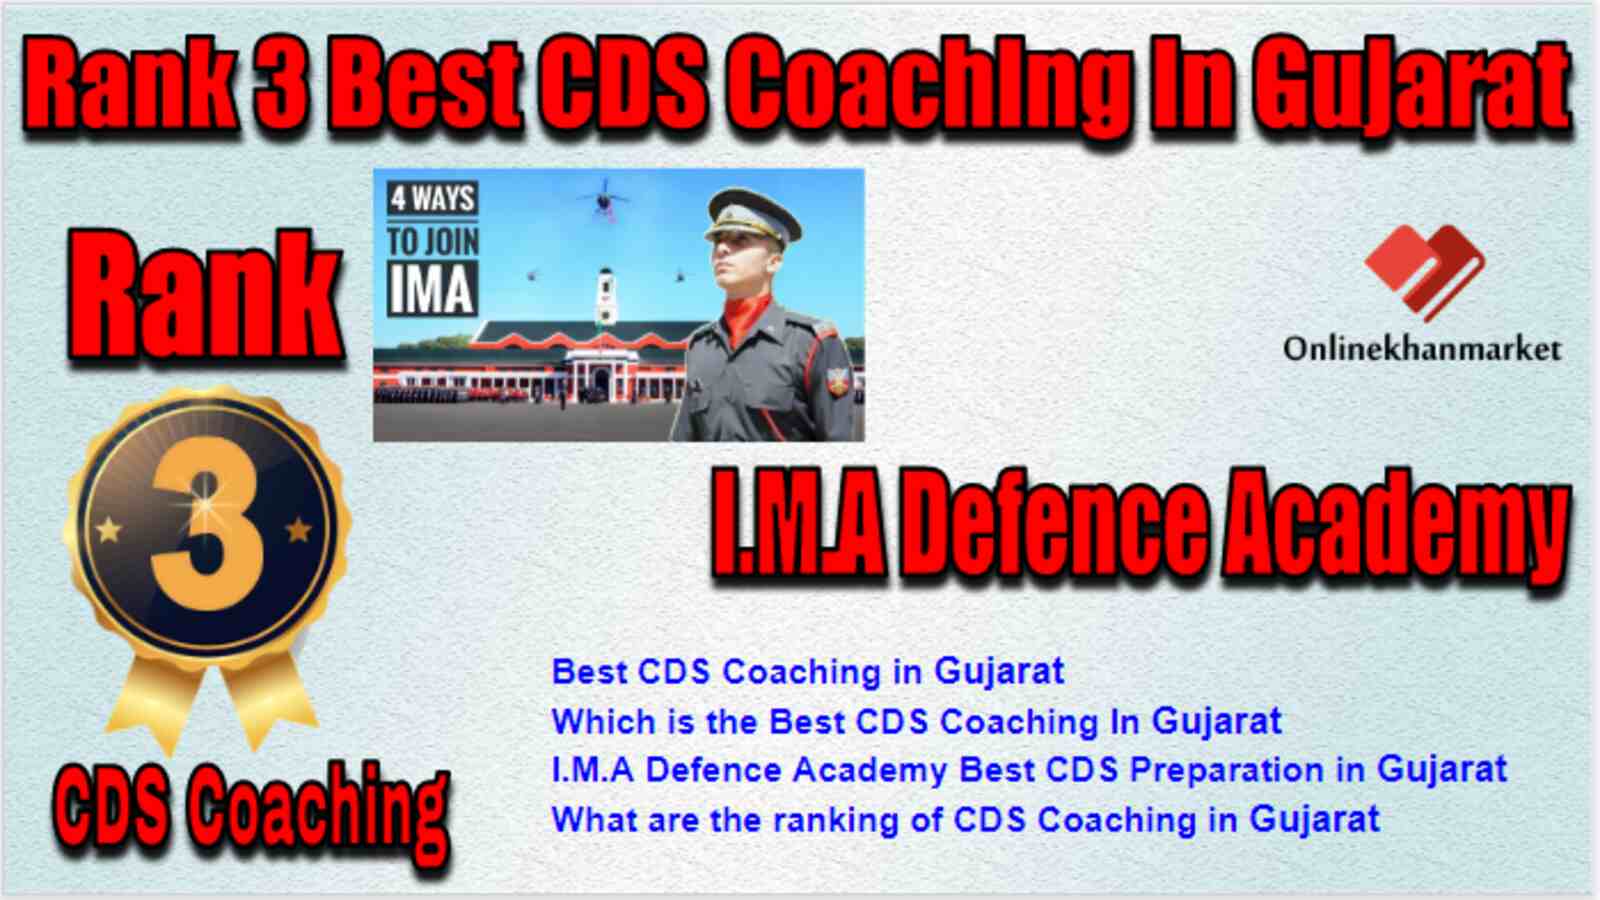 Rank 3 Best CDS Coaching in Gujarat